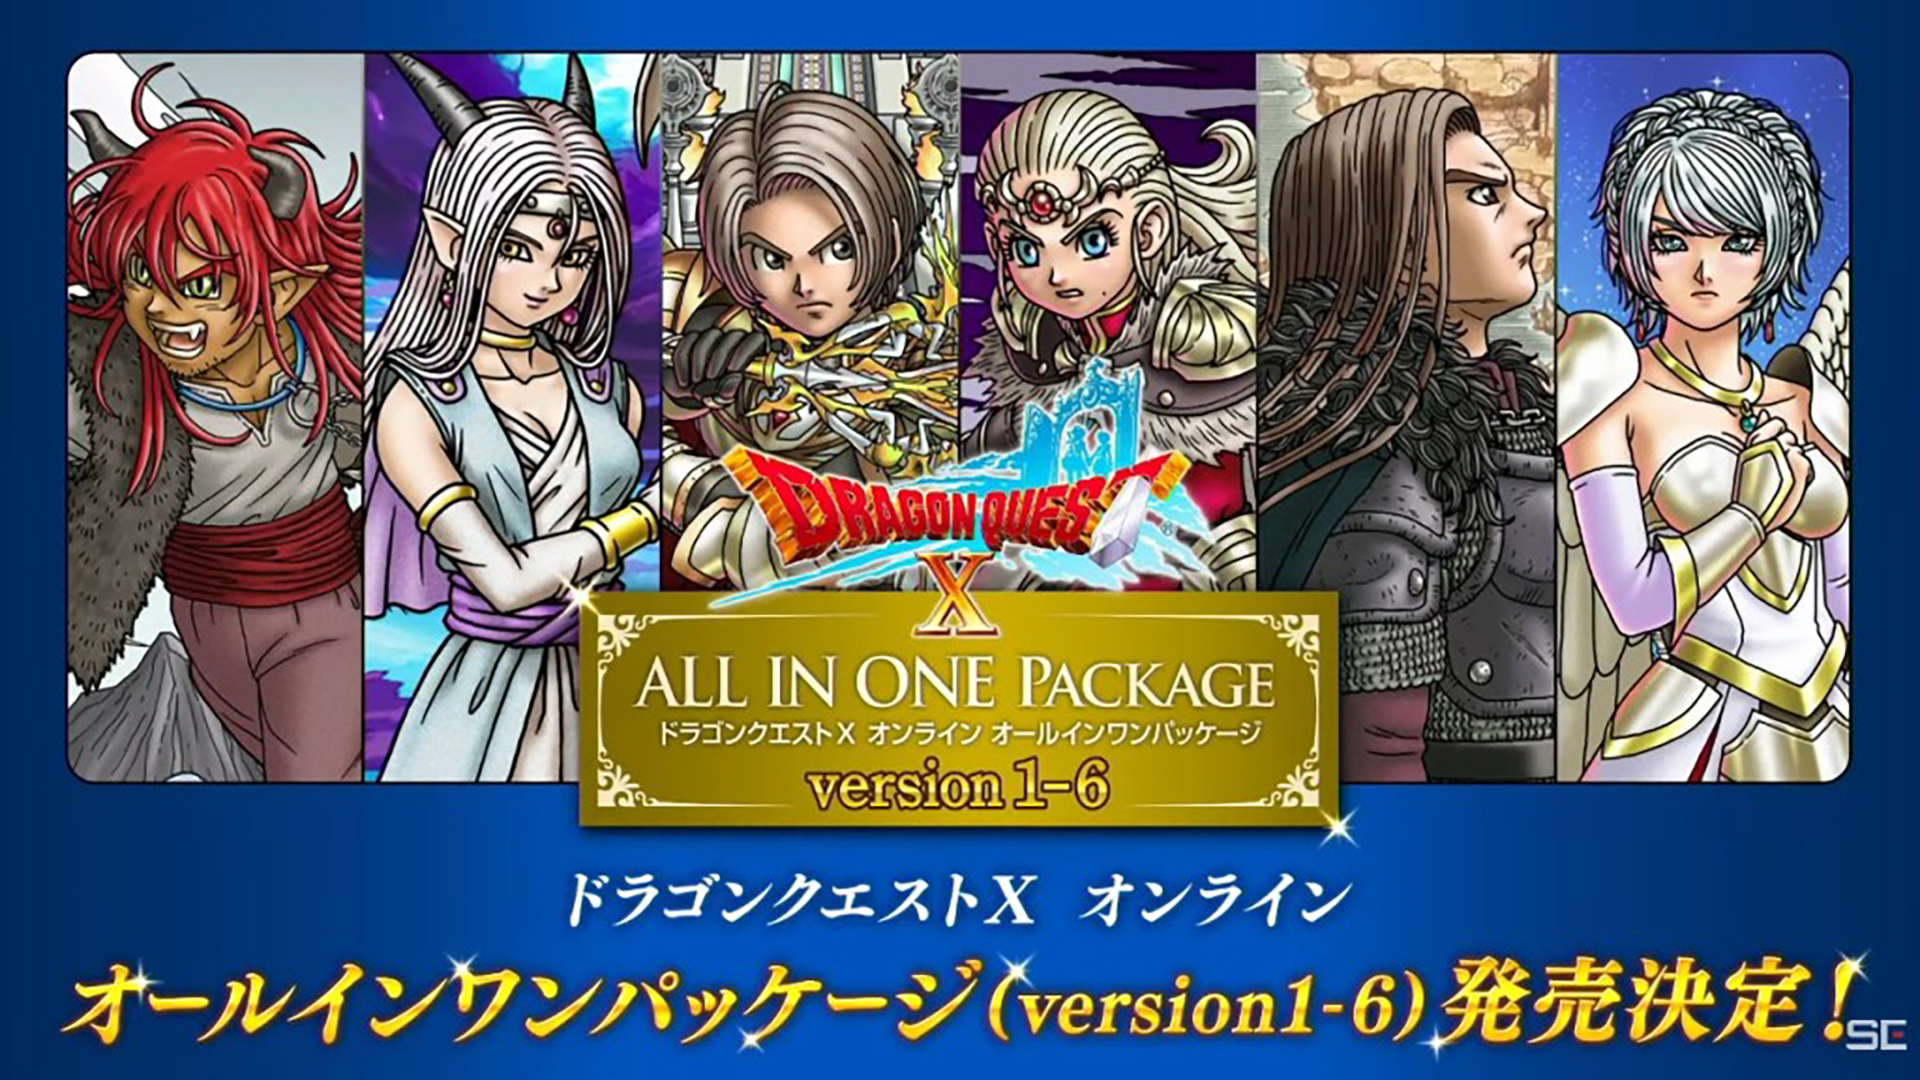 Dragon Quest X Online All In One Package version 1-6 เตรียมวางจำหน่ายในญี่ปุ่น